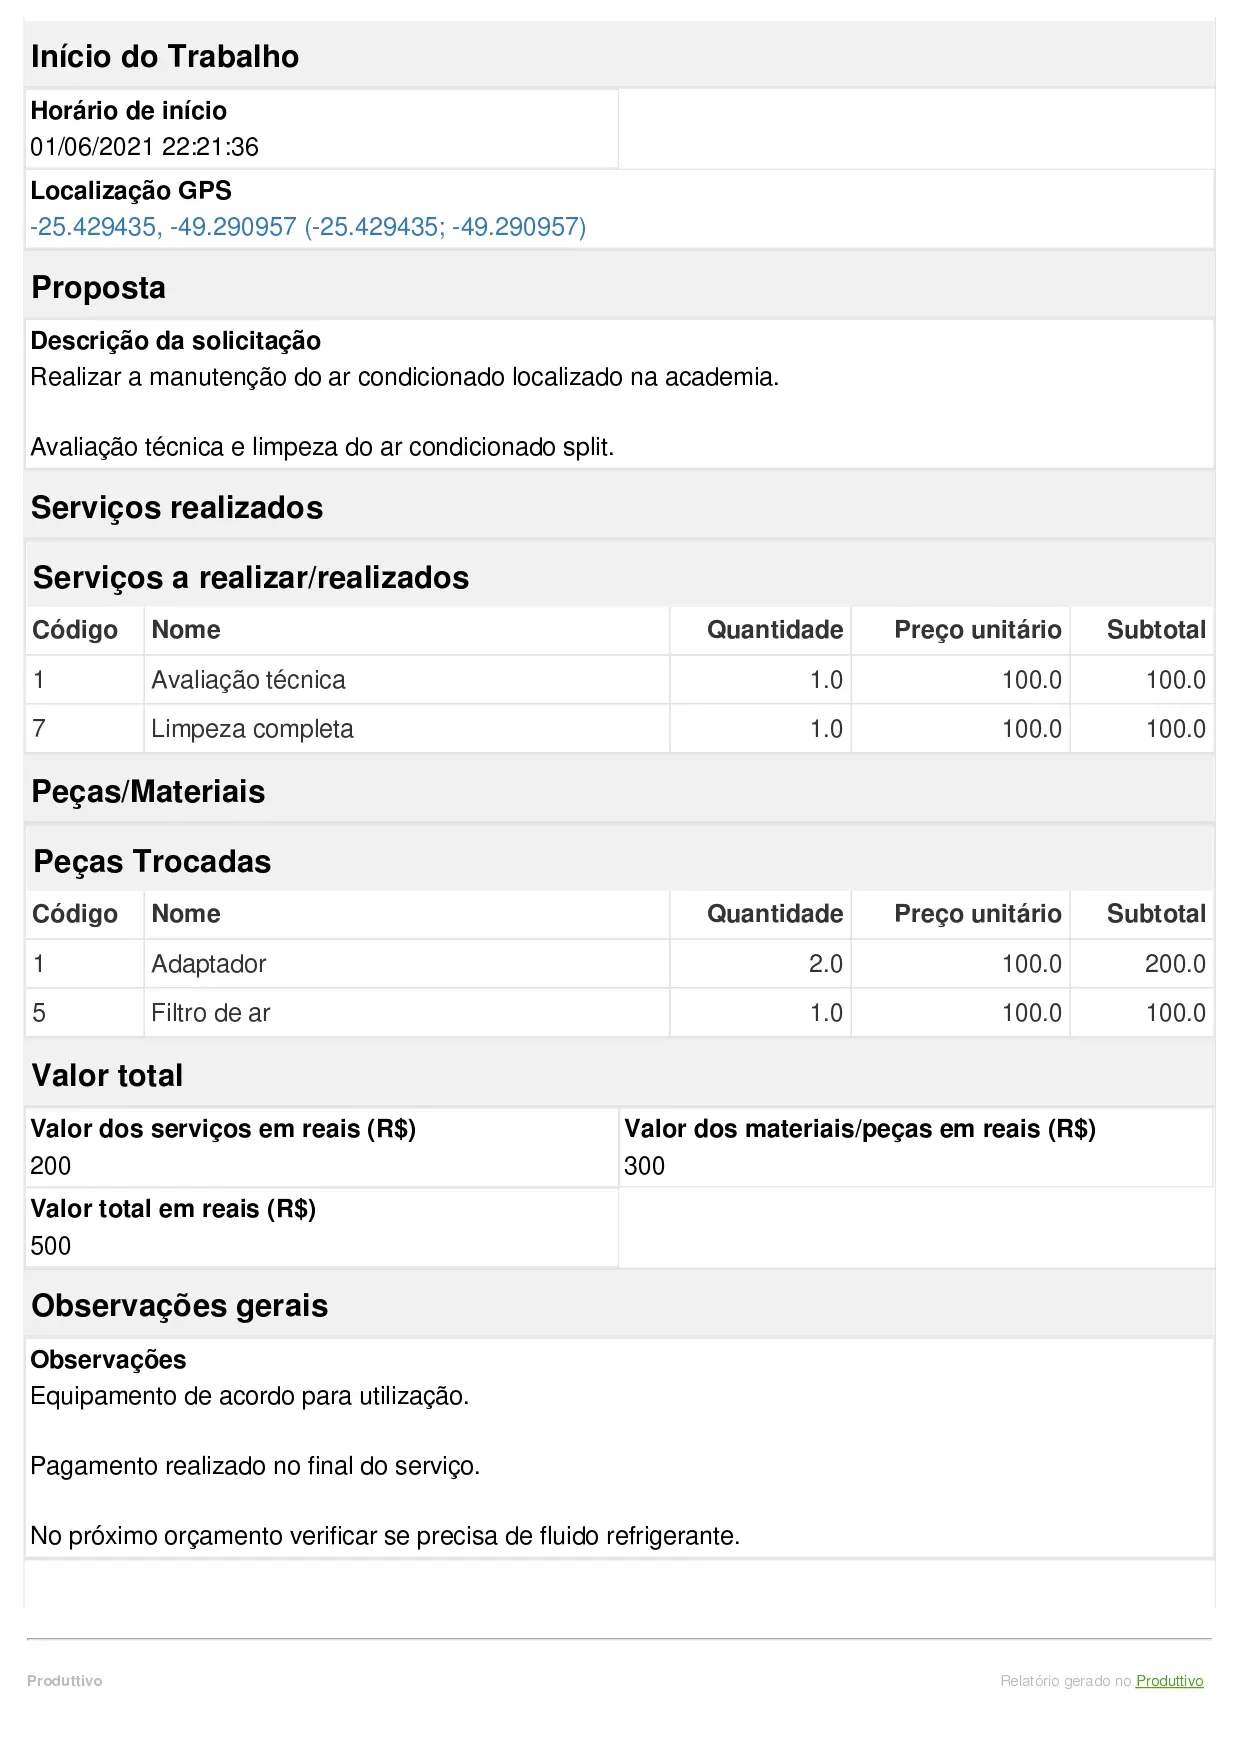 Exemplo de modelo de orçamento de serviço digital criado no Produttivo com recursos de cálculo automático, página 02